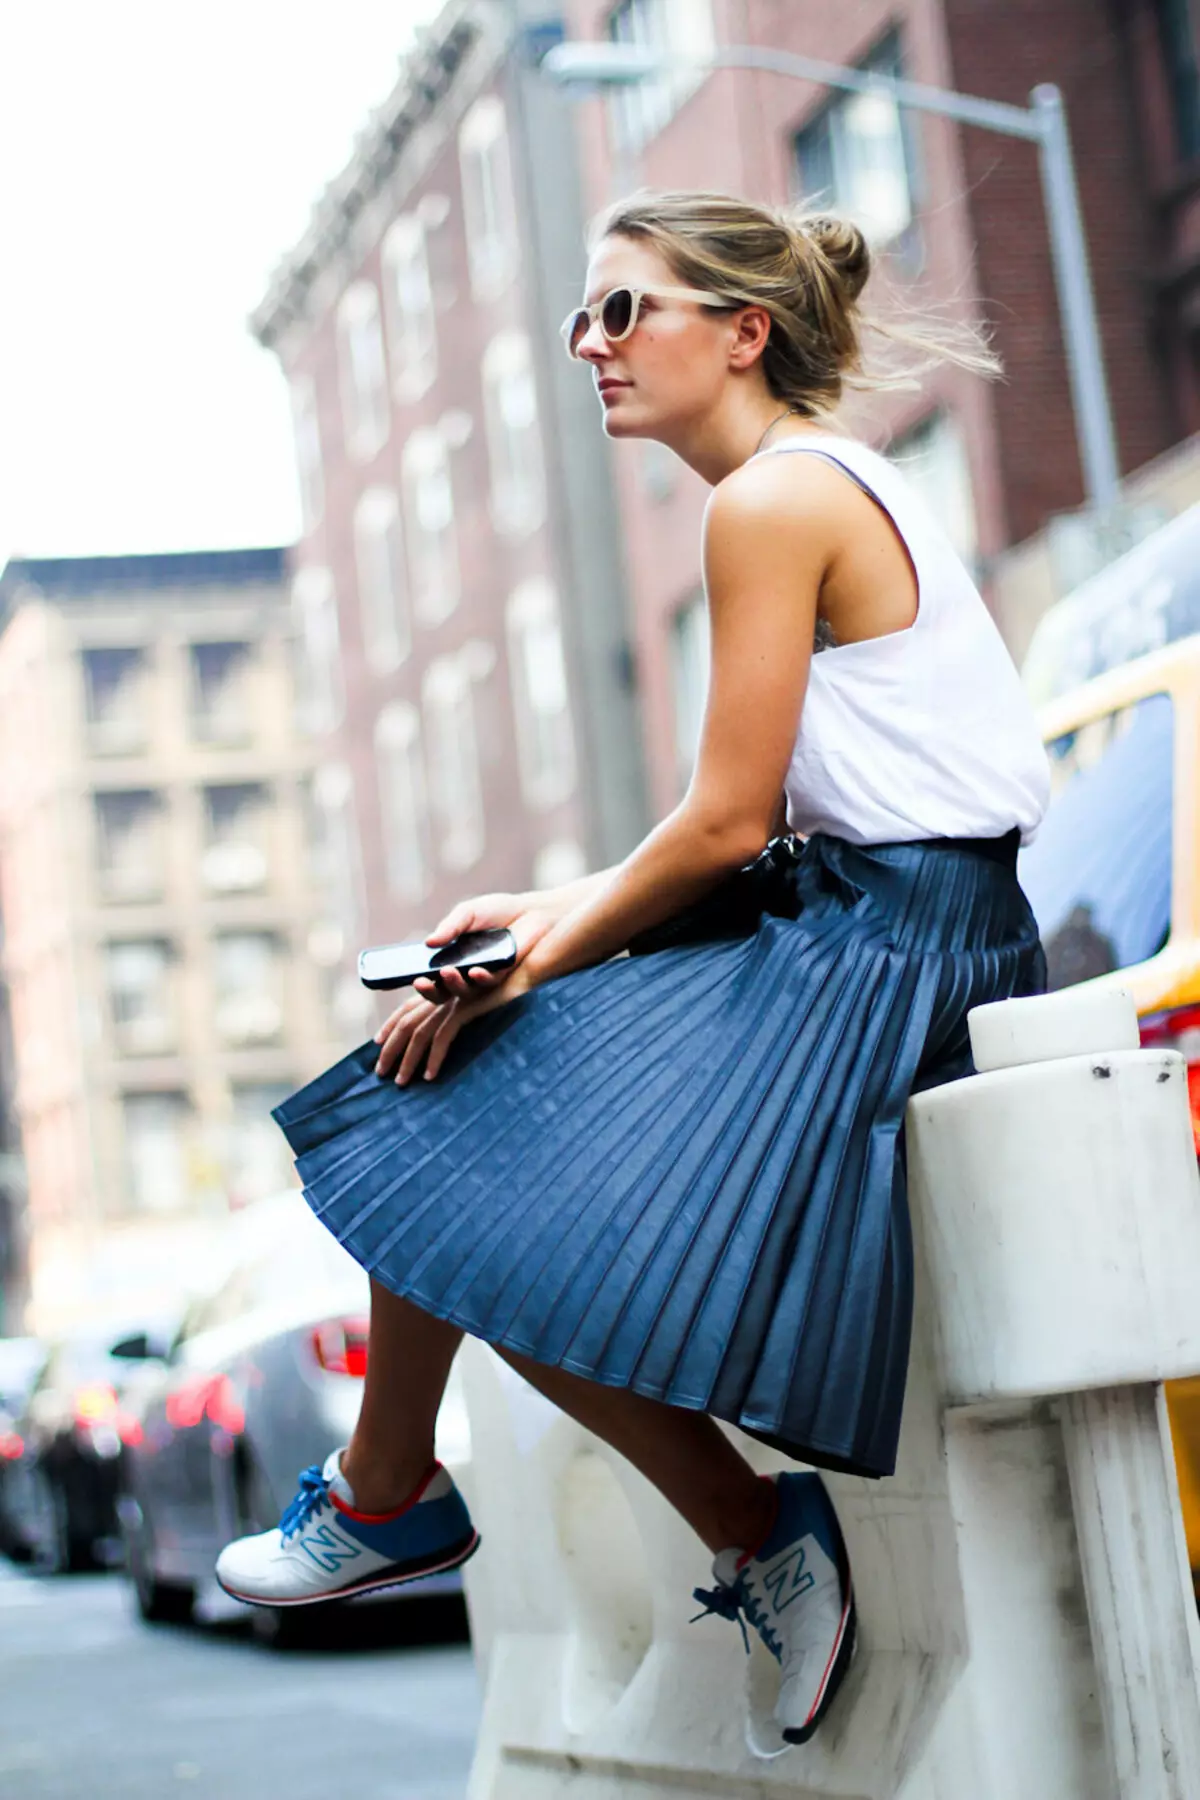 Placs Skirt Kulit: Apa yang perlu dipakai Rok Eco-Piece Pleated? Imej dengan skirt kulit tiruan hitam dan coklat 800_17